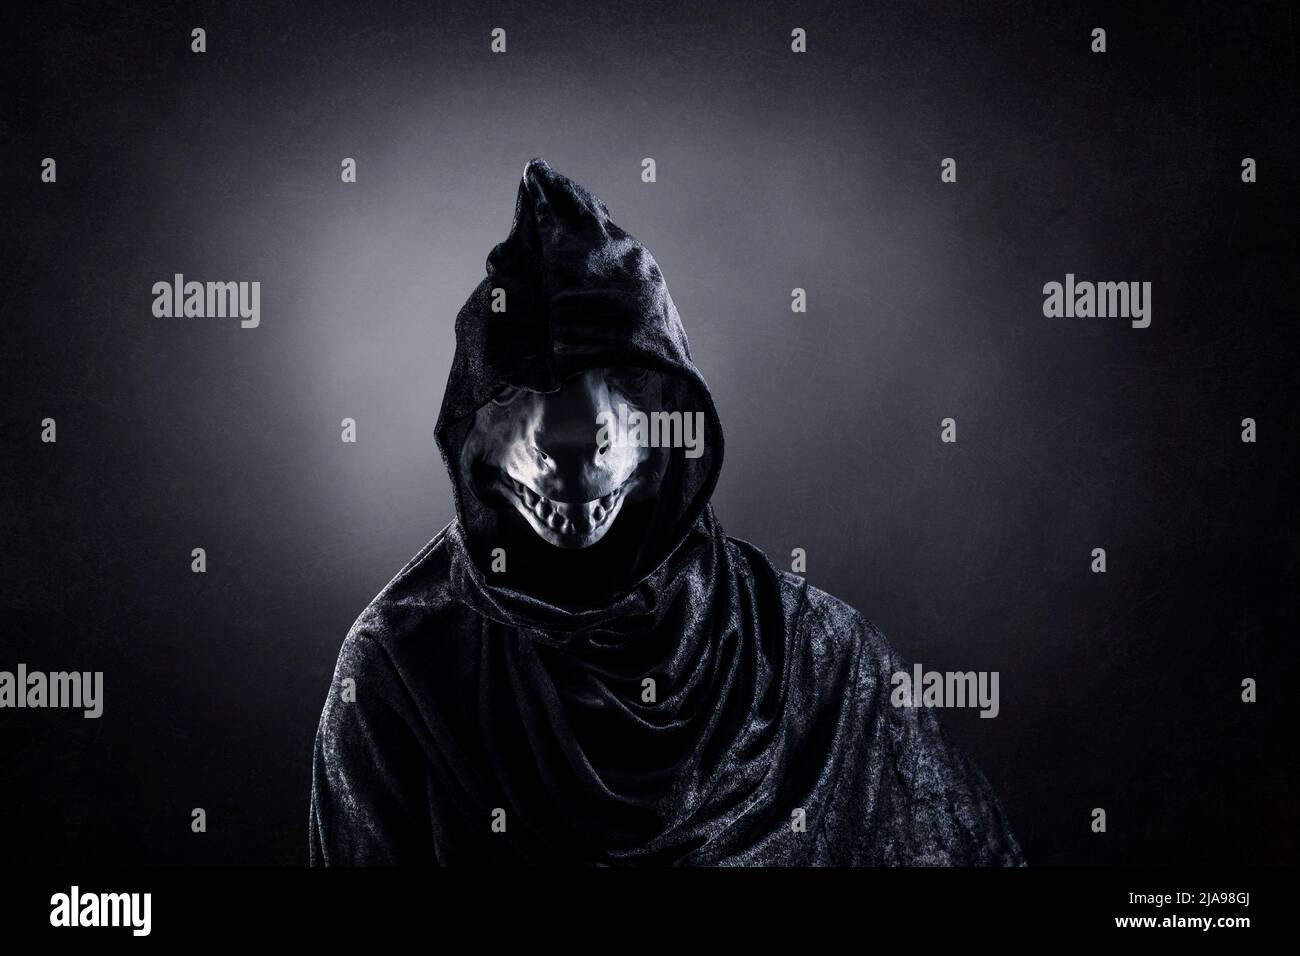 dark hooded man wallpaper